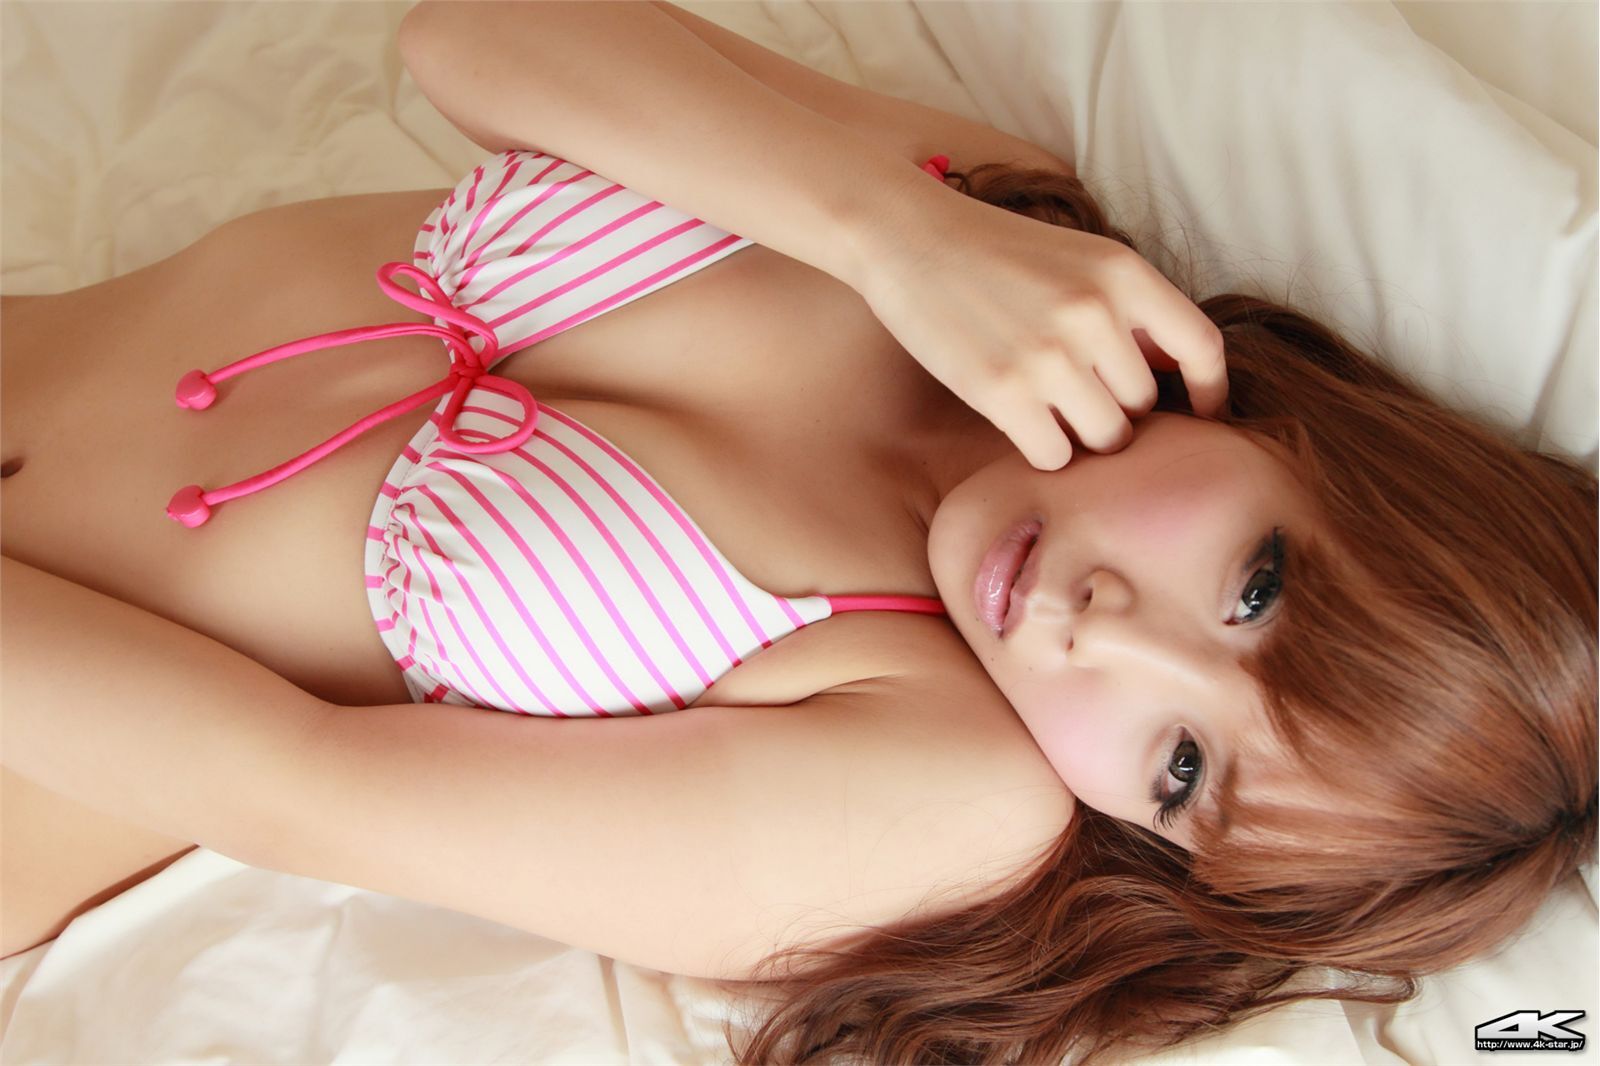 4K - Star Japanese beauty girl